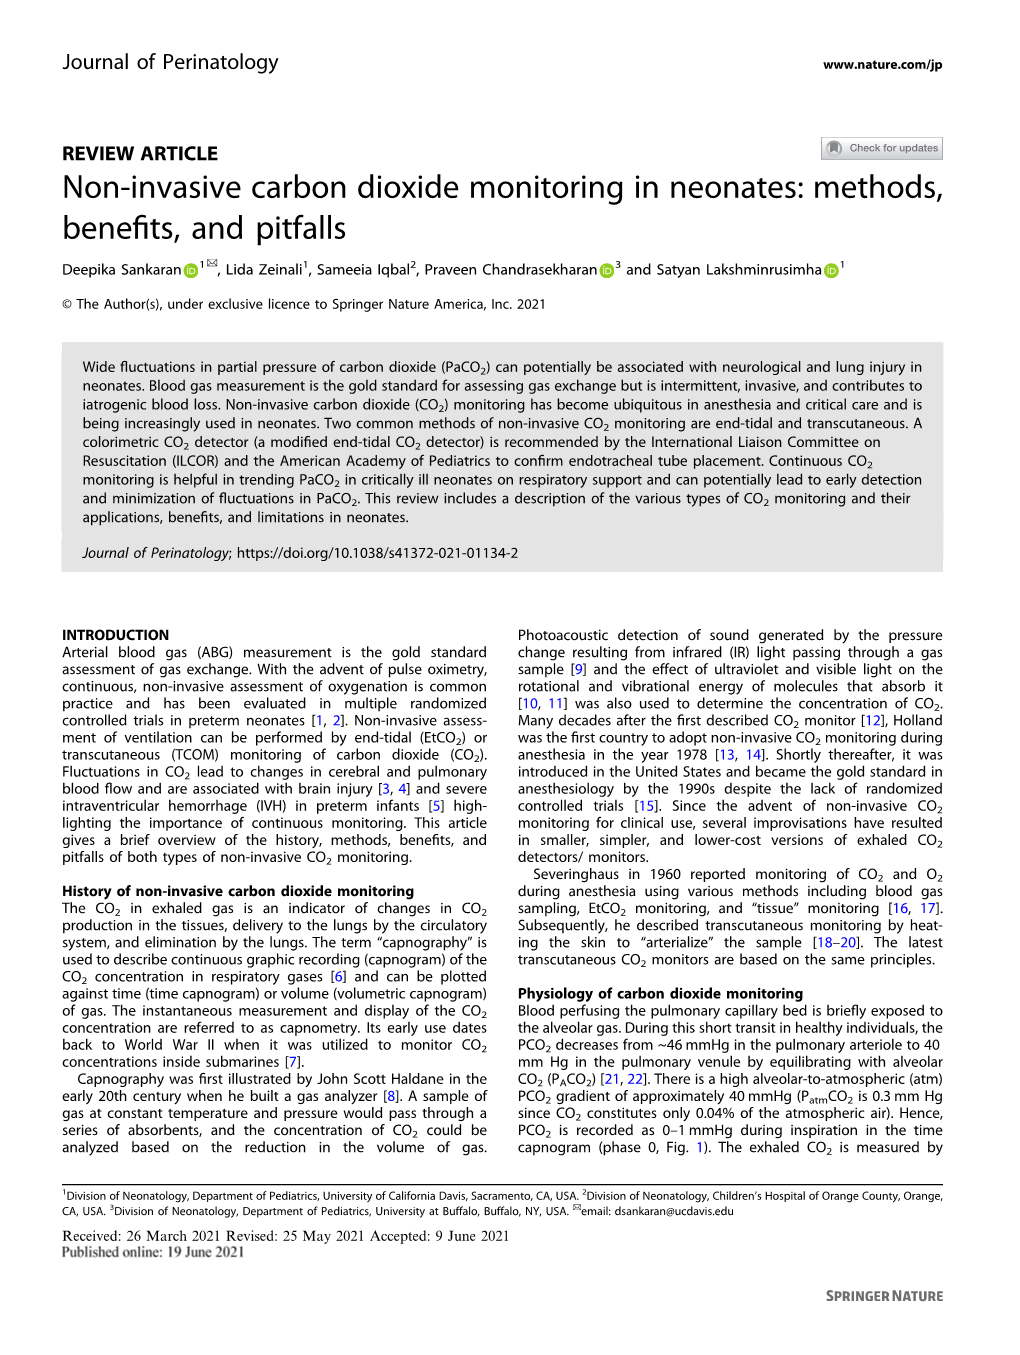 Non-Invasive Carbon Dioxide Monitoring in Neonates